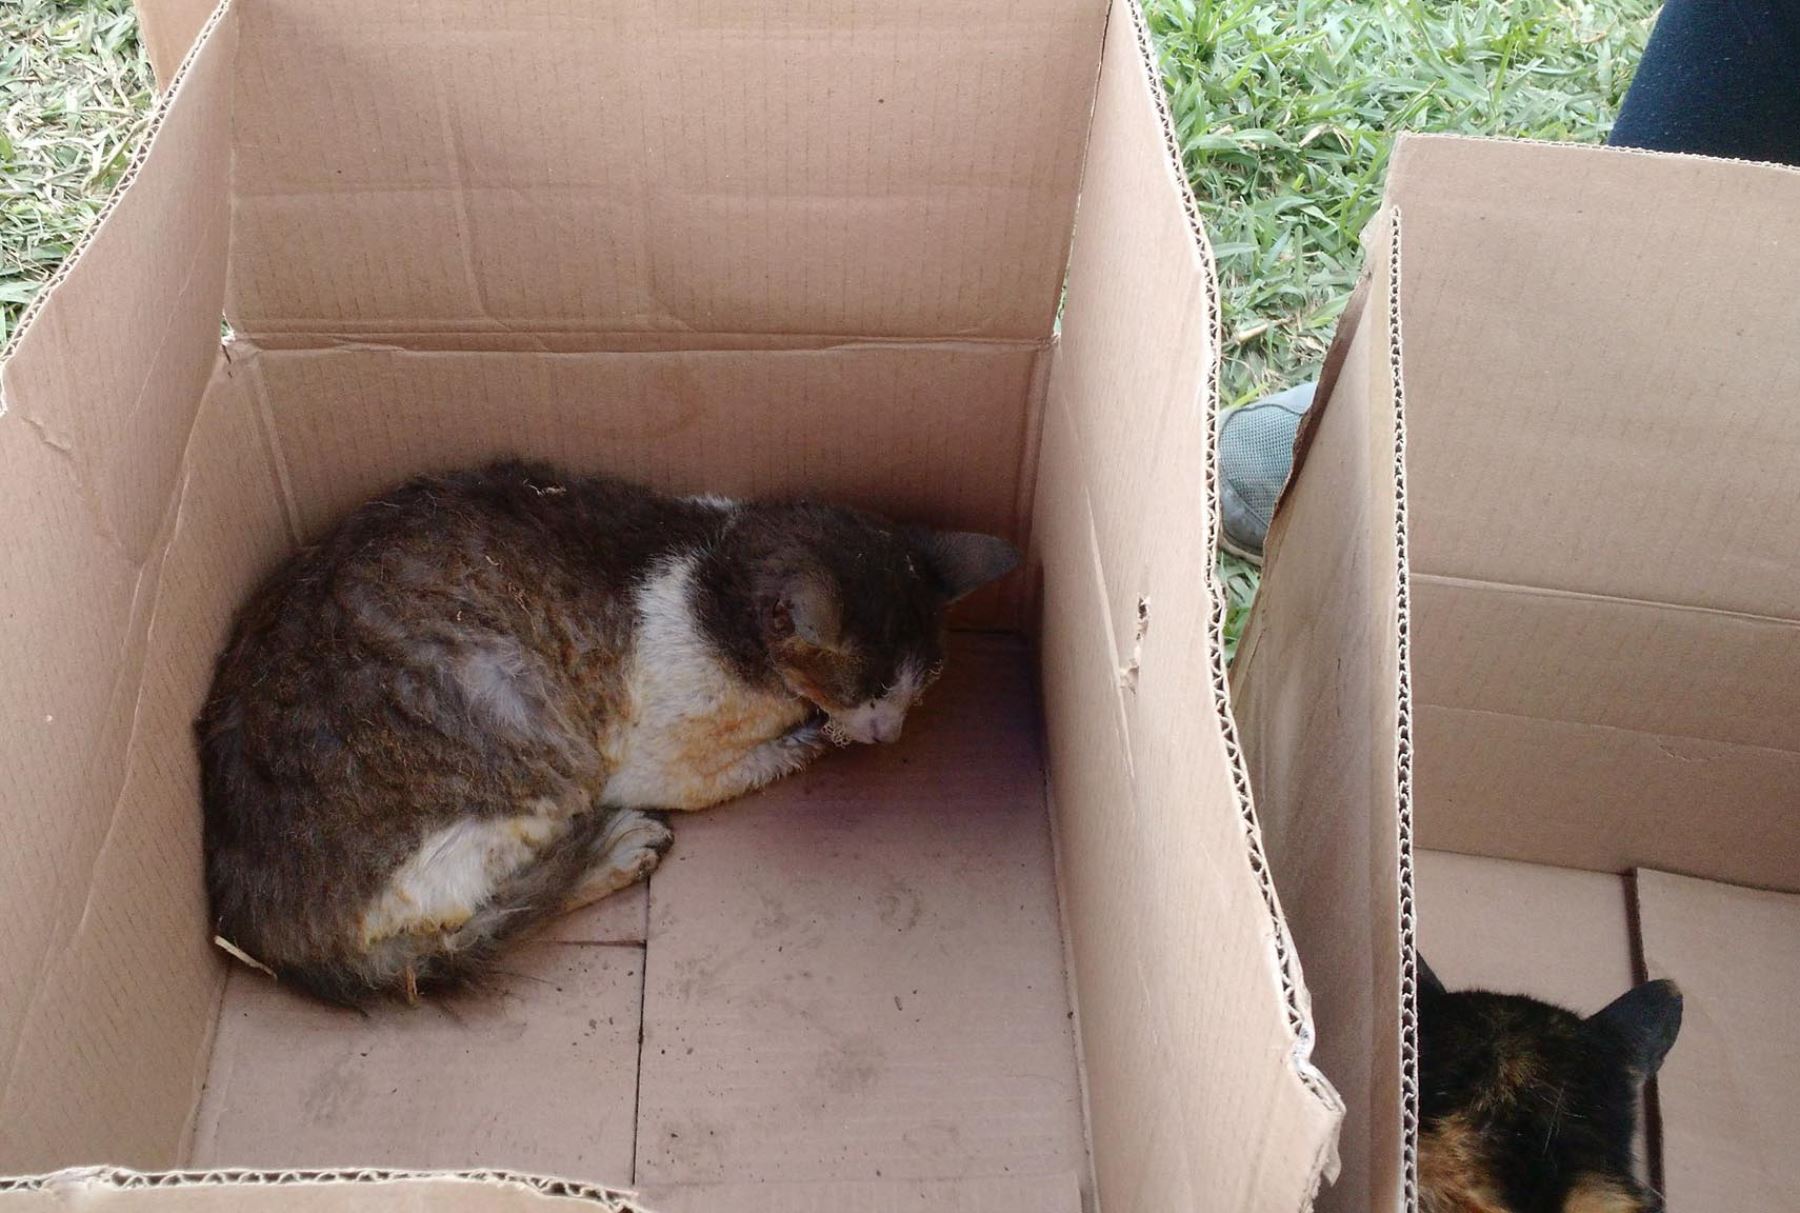 Mascotas sufrieron quemaduras en incendio, pero fueron rescatadas con vida. Foto: Diego Garcia.